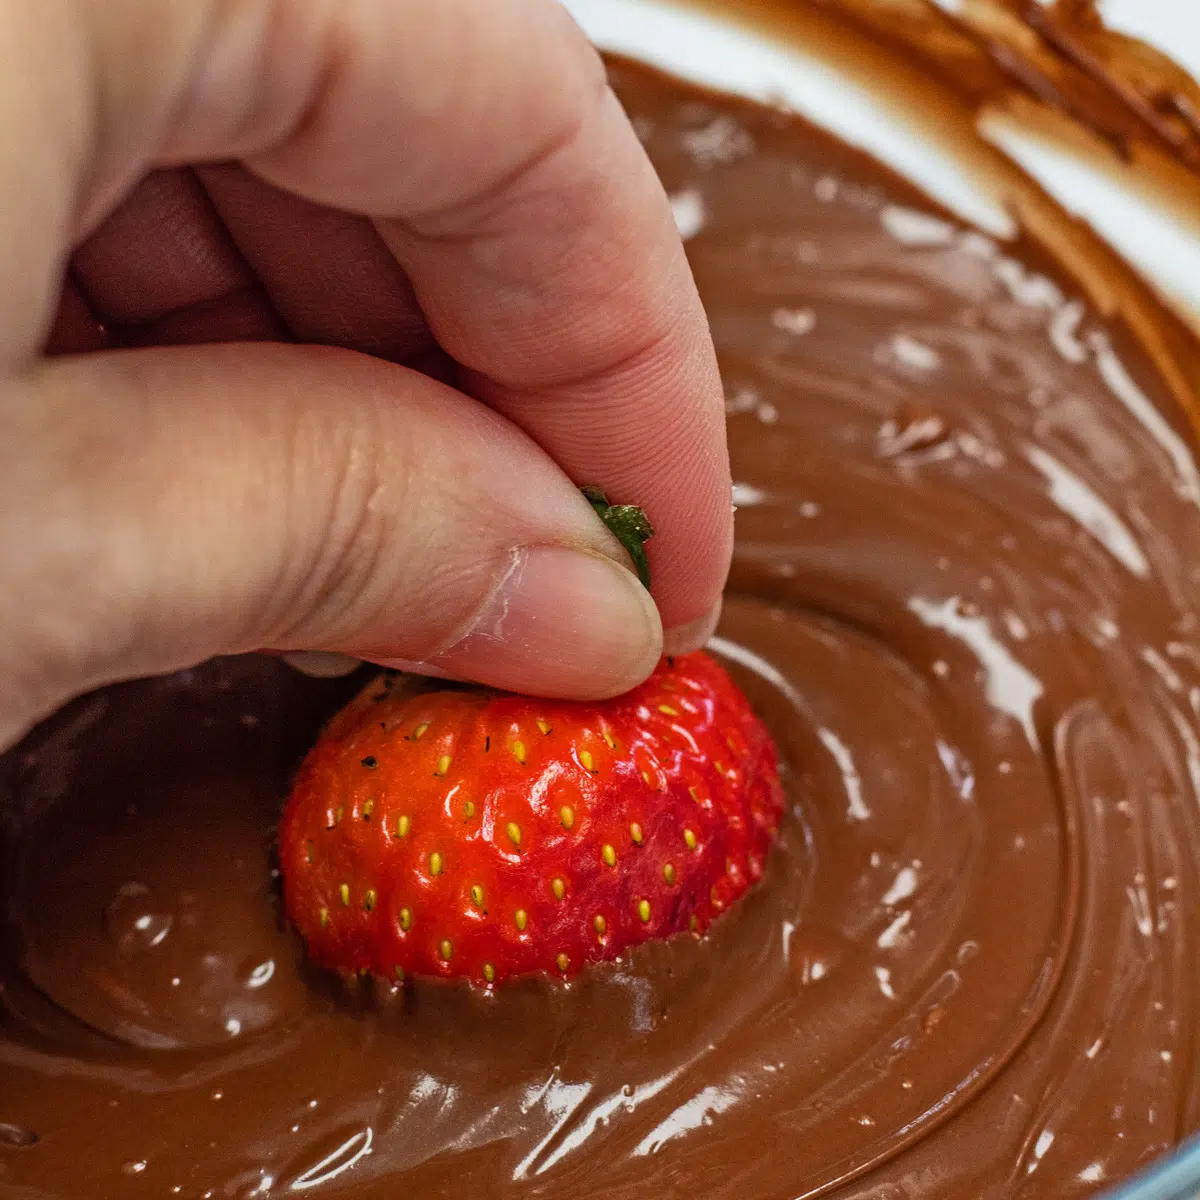 Cómo derretir chispas de chocolate como este chocolate cremoso y suave que se usa con fresas.